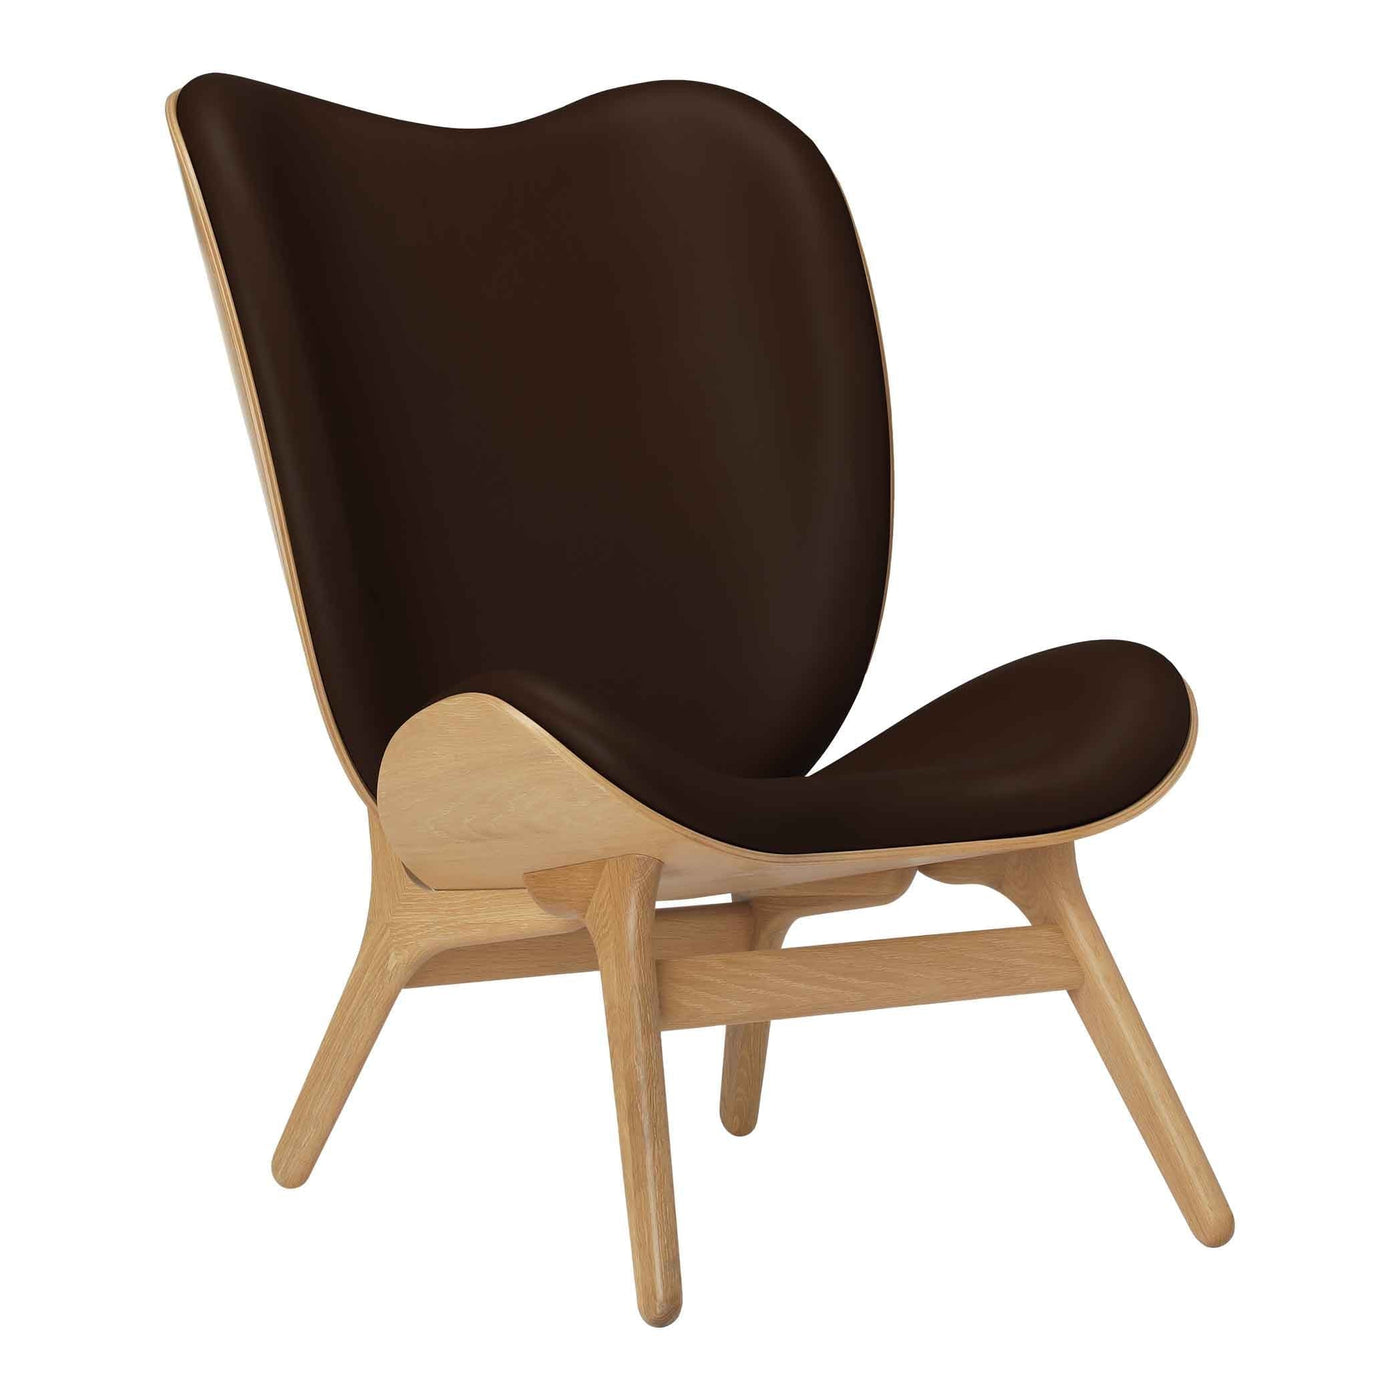 Umage A Conversation Piece Tall, fauteuil confortable avec dossier haut, en bois et tissu, chêne, cuir brun